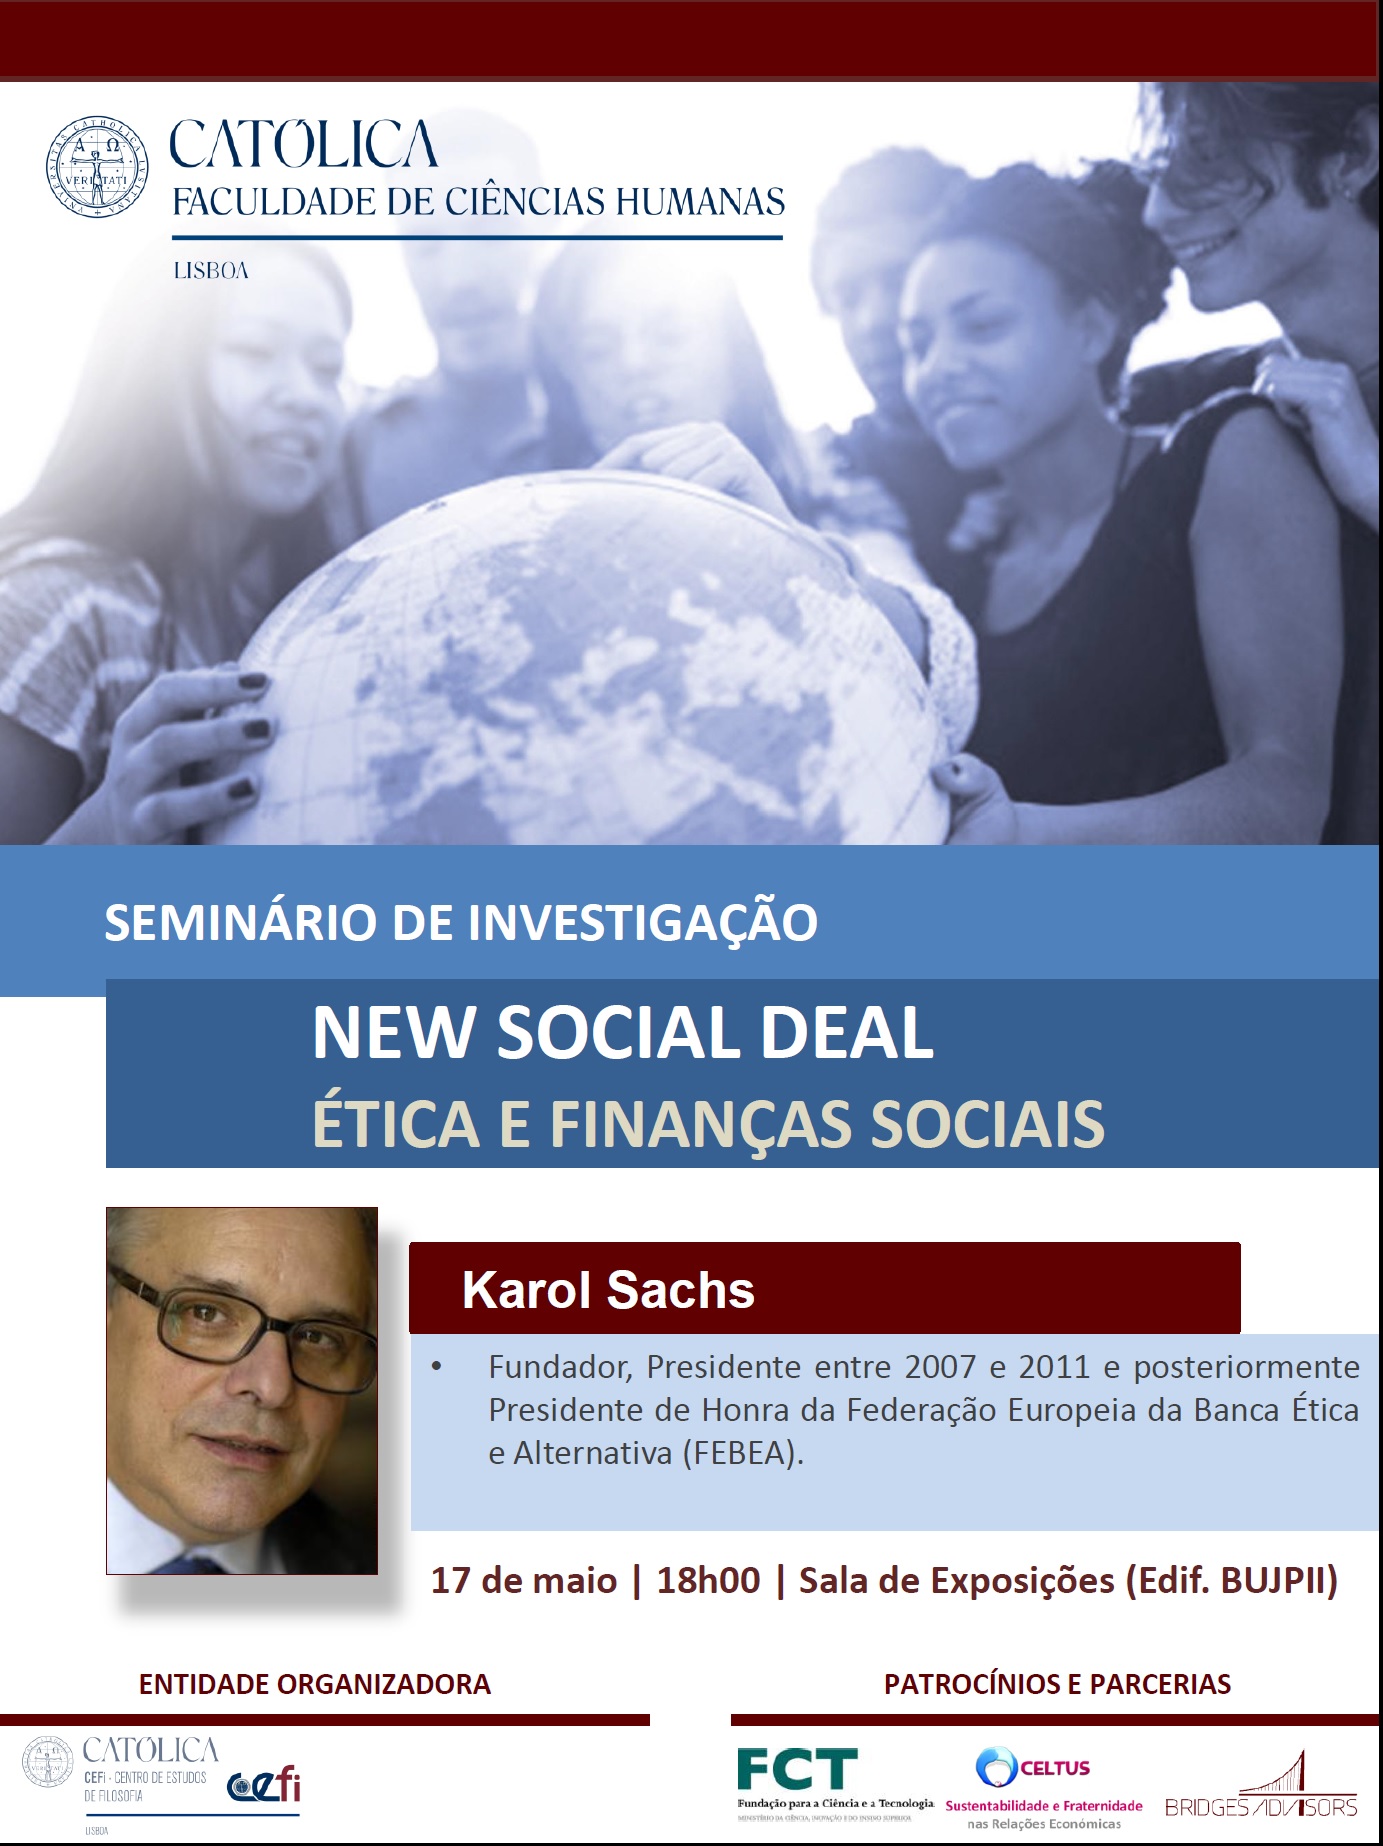 Etica e Finanças Sociais